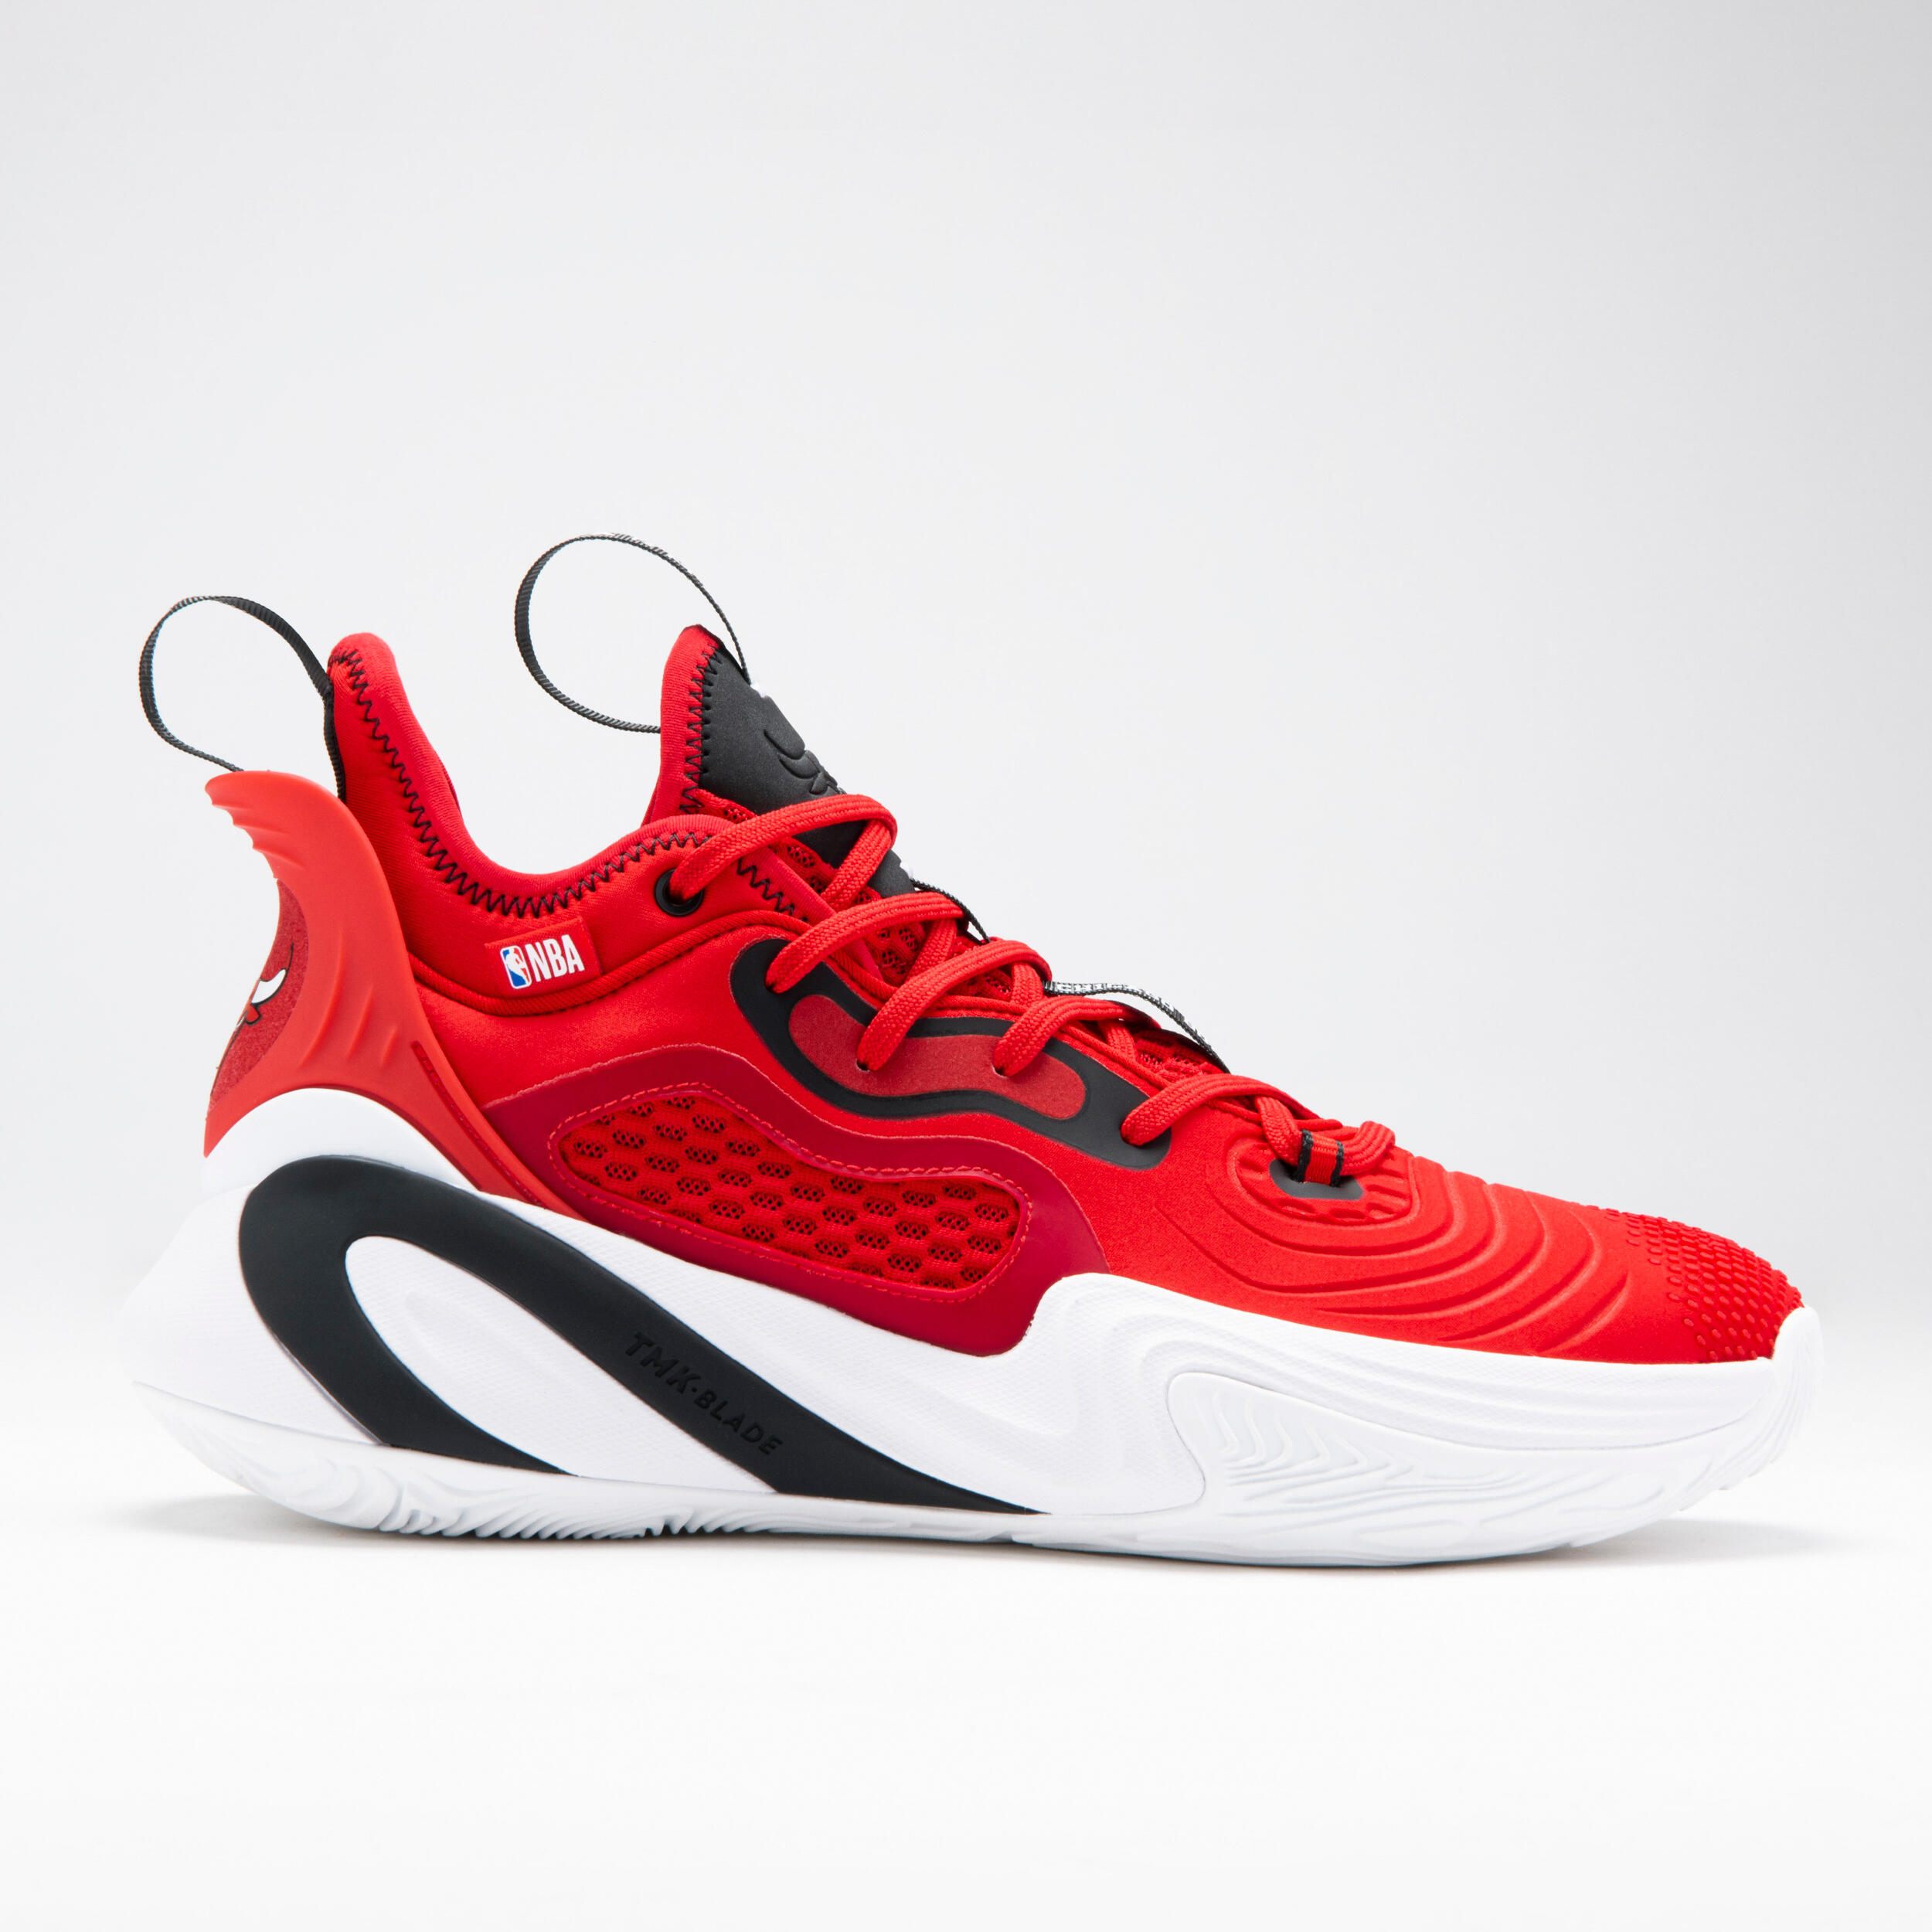 Men's/Women's Basketball Shoes SE900 - Red/NBA Chicago Bulls 1/10